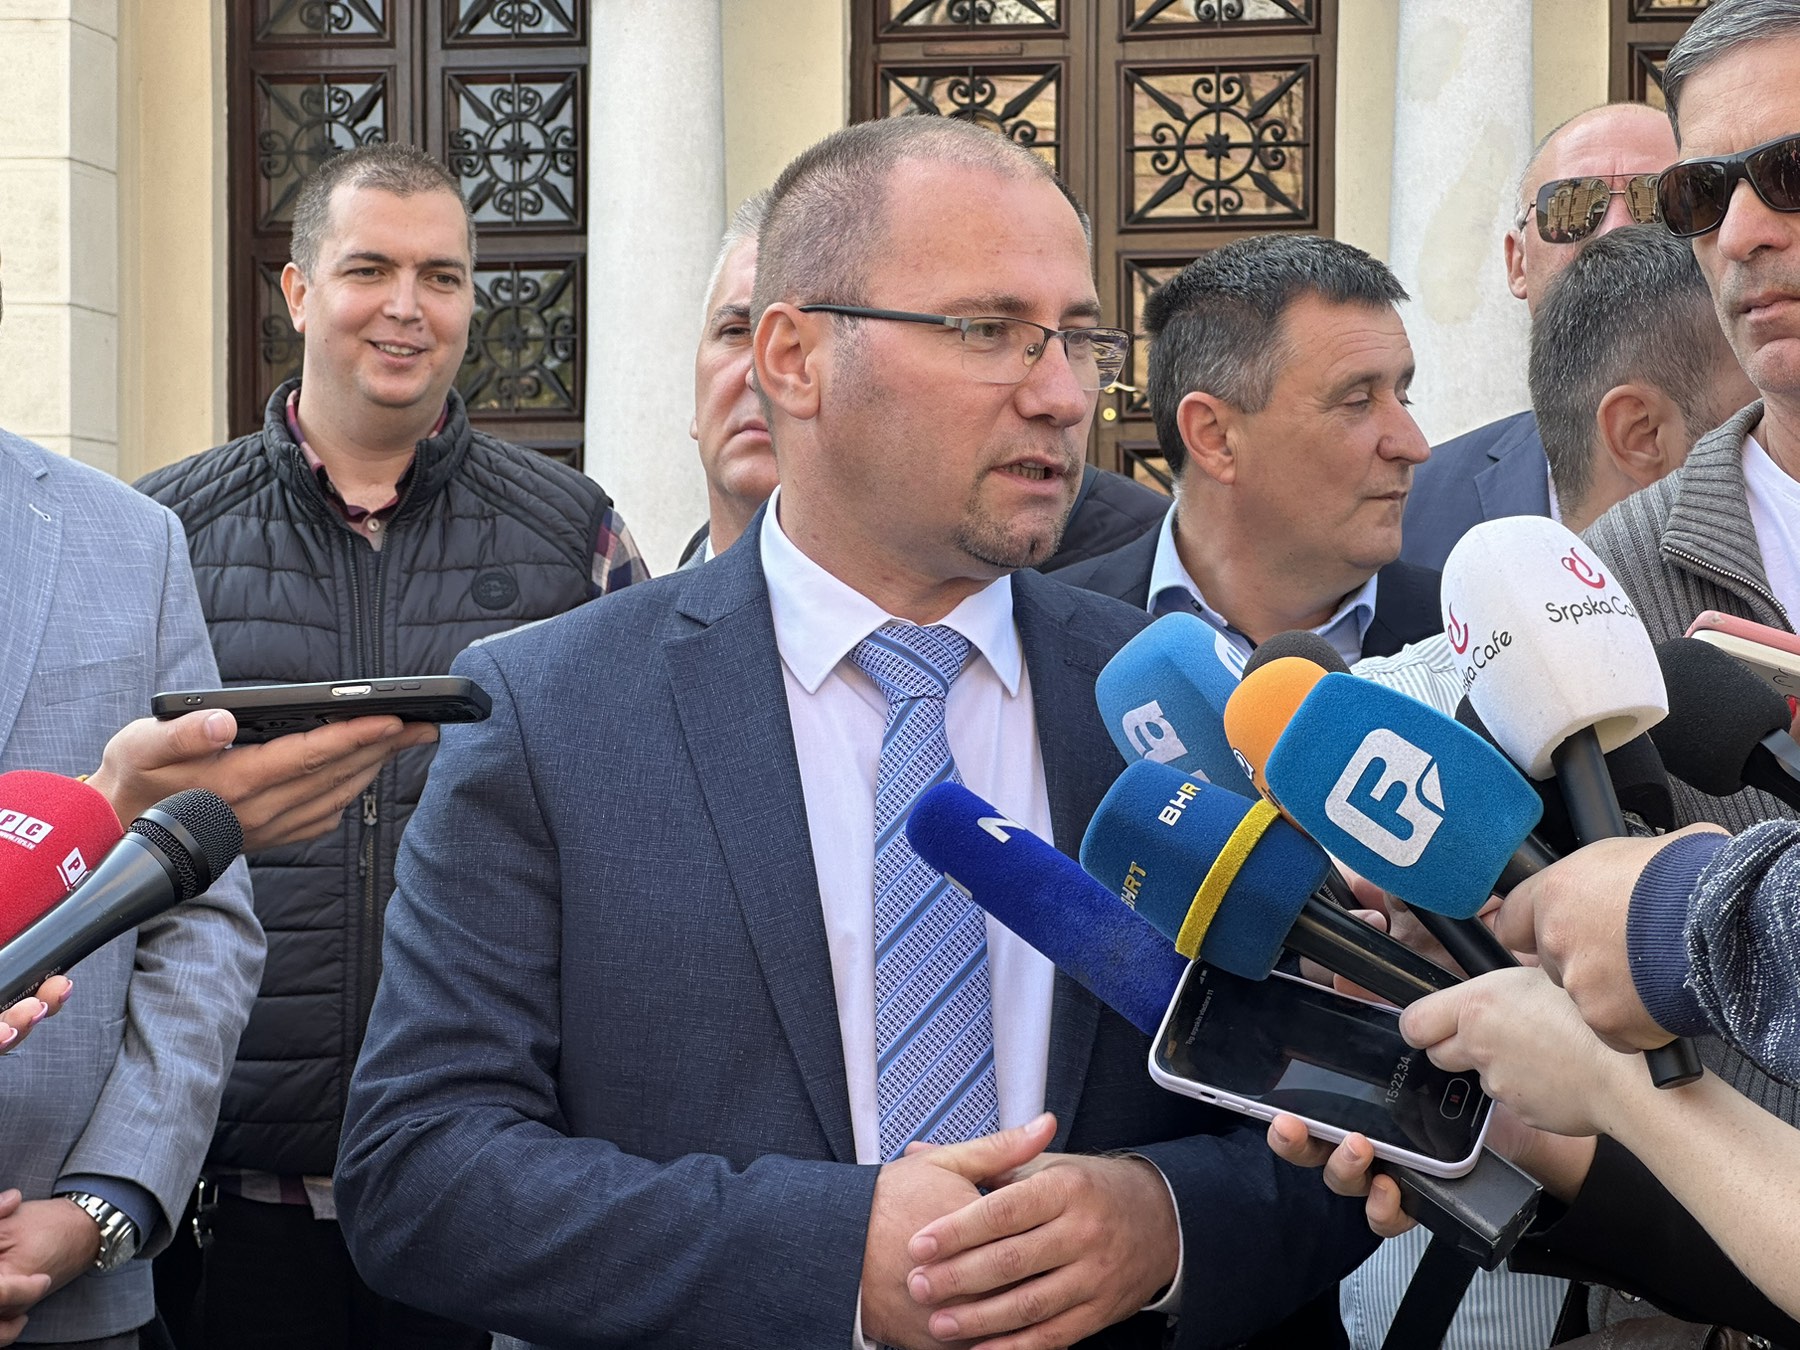 “TRAŽIMO NAJBOLJA RJEŠENJA” Bosančić naveo razloge zbog kojih će DEMOS glasati za rebalans